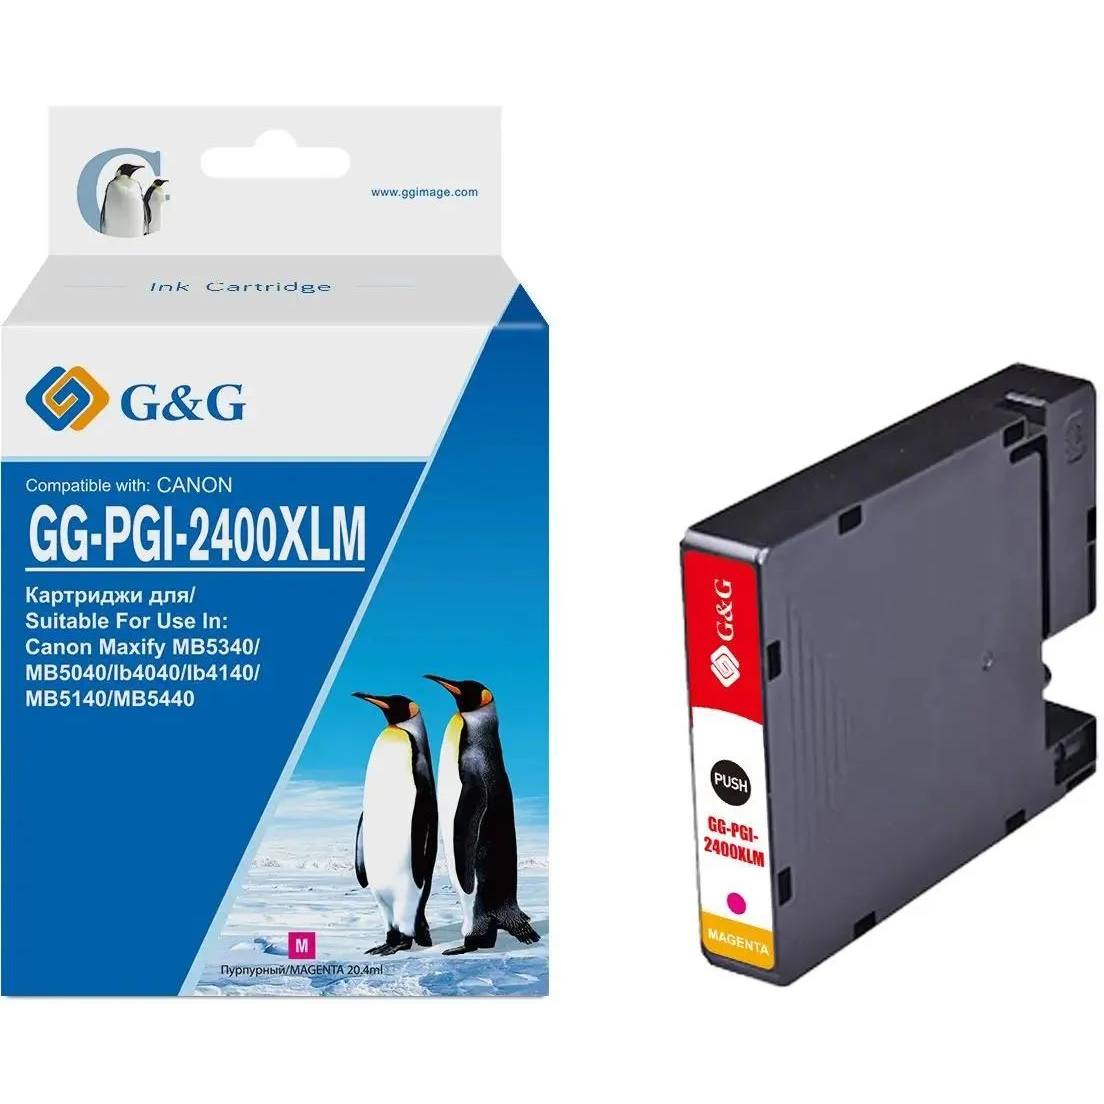 Картридж струйный G&G GG-PGI-2400XLM PGI-2400XL M пурпурный (20.4мл) для Canon Maxify iB4040/iB4140/МВ5040/MB5140/МВ5340/MB5440 картридж hi black pgi 2400xlm для canon maxify ib4040 мв5040 мв5340 magenta